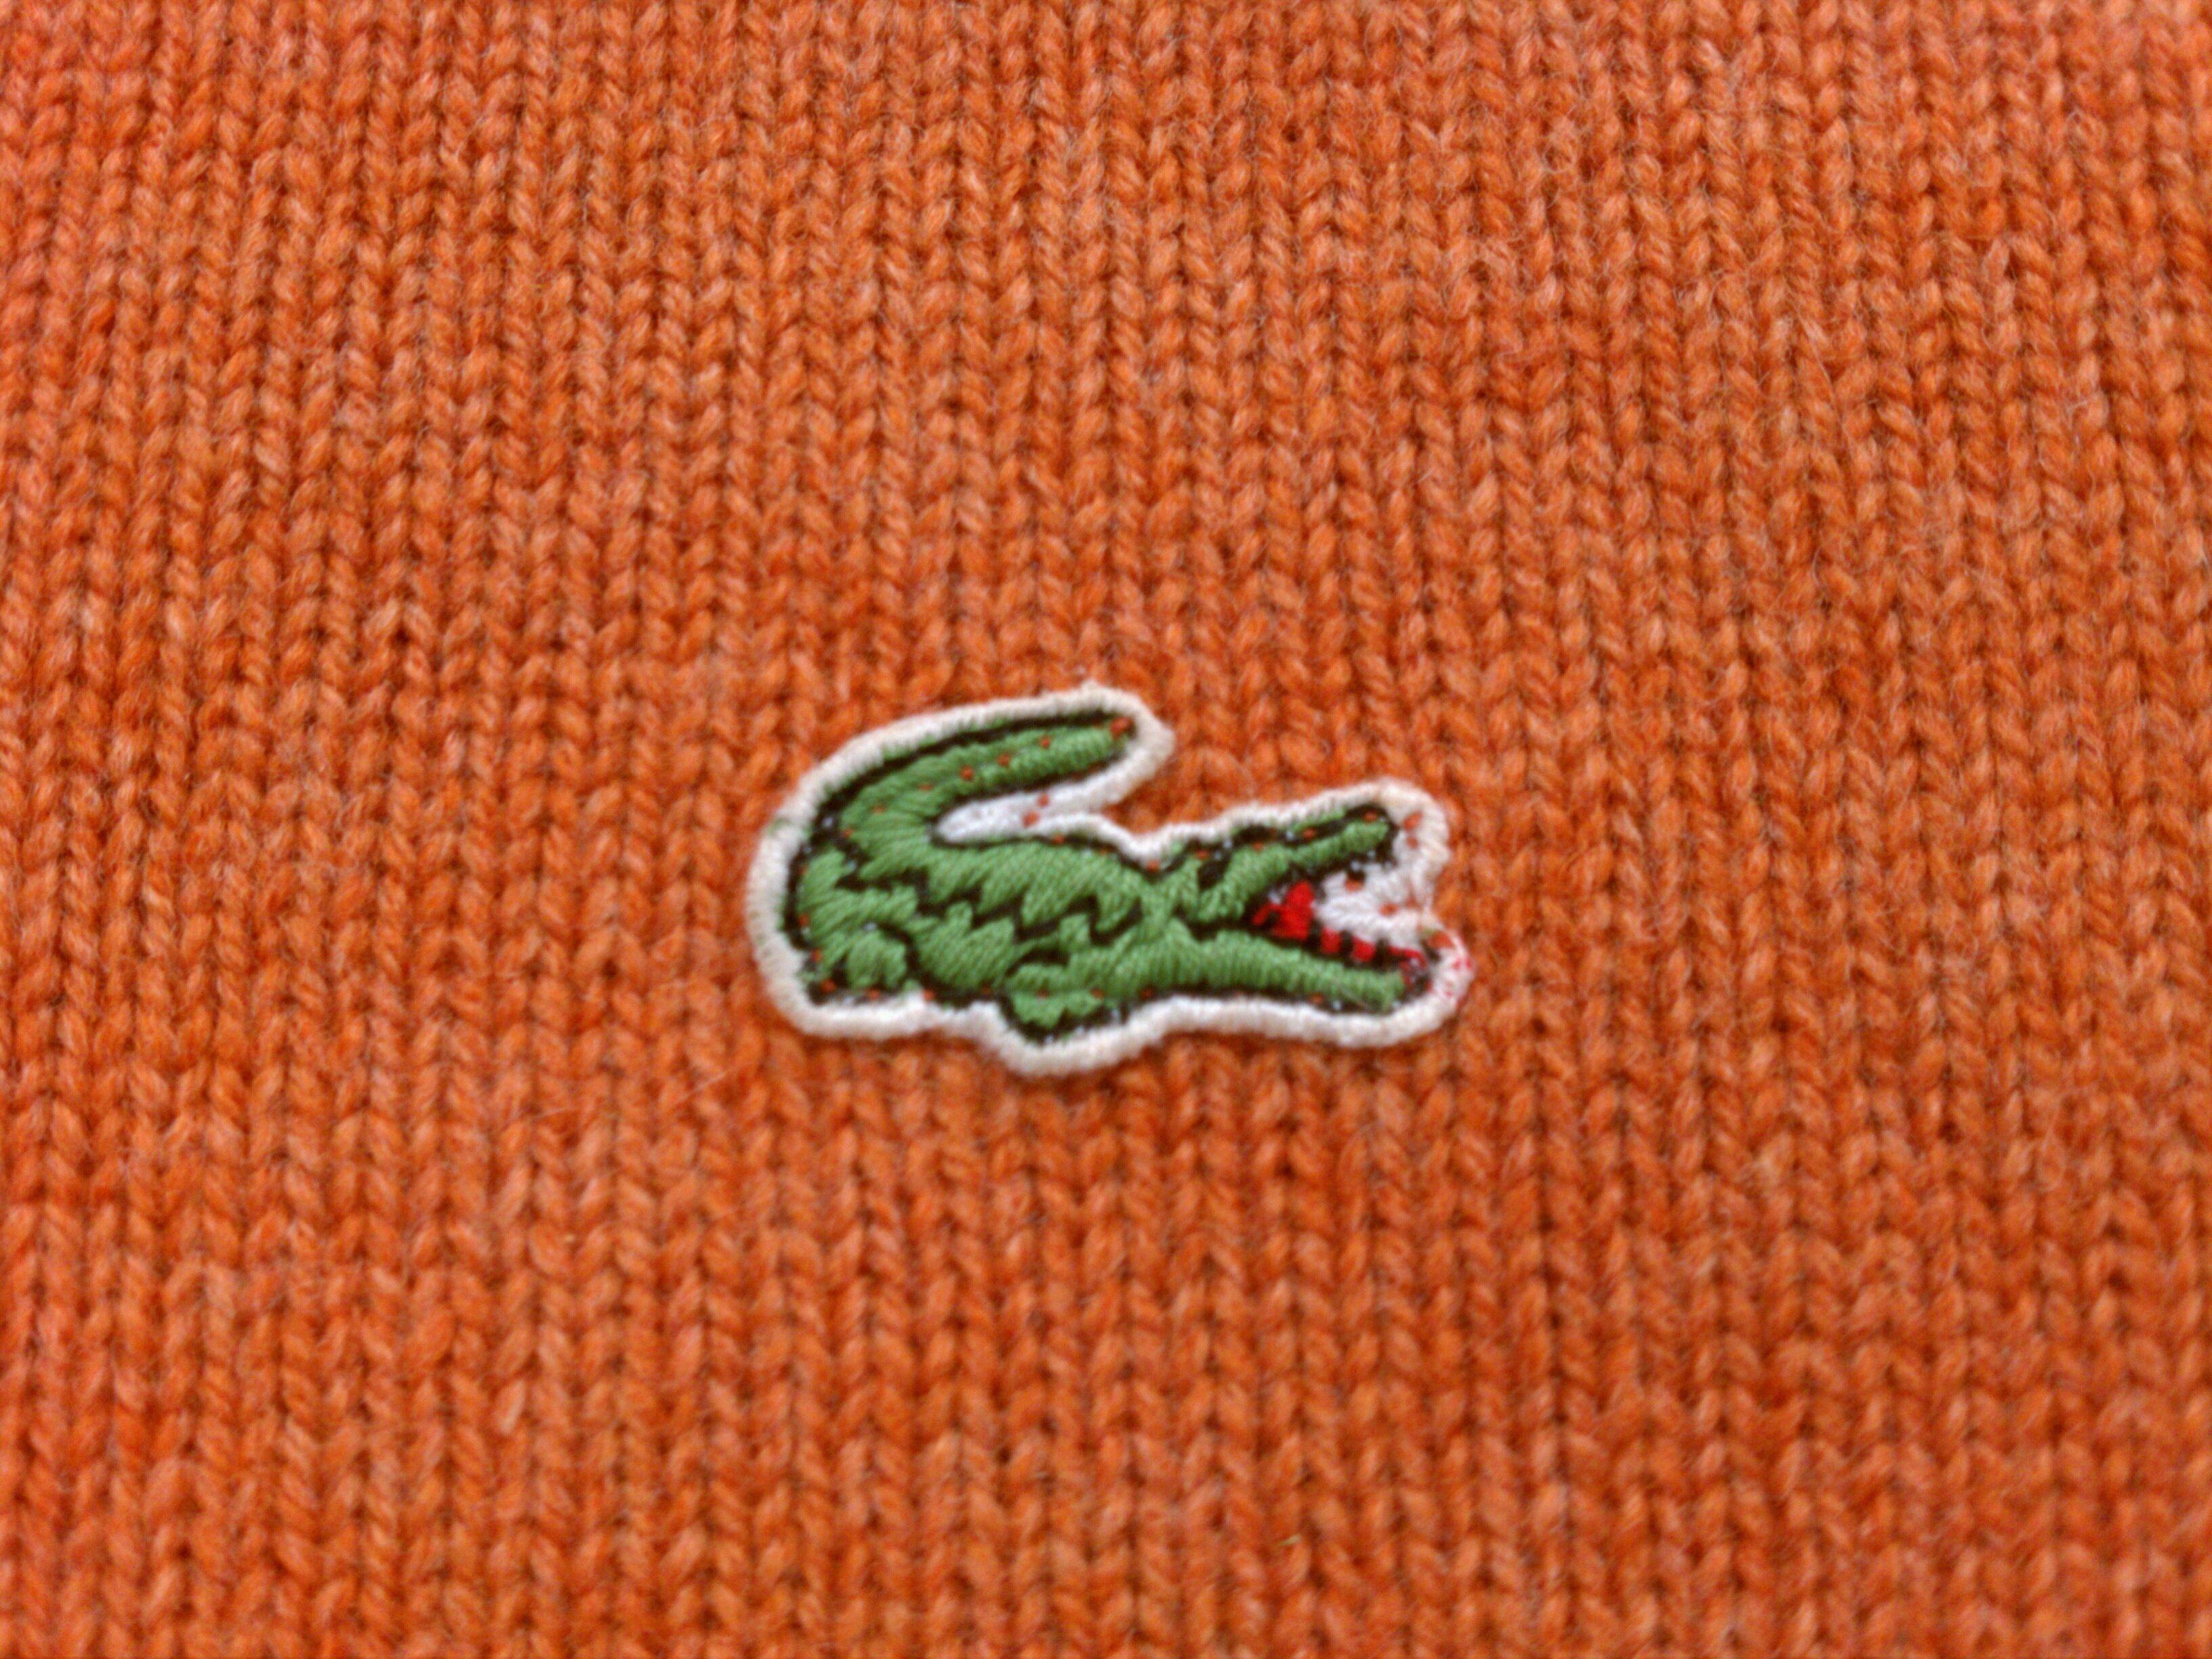 Izod Logo - Izod Sweater. Thrift Store Preppy